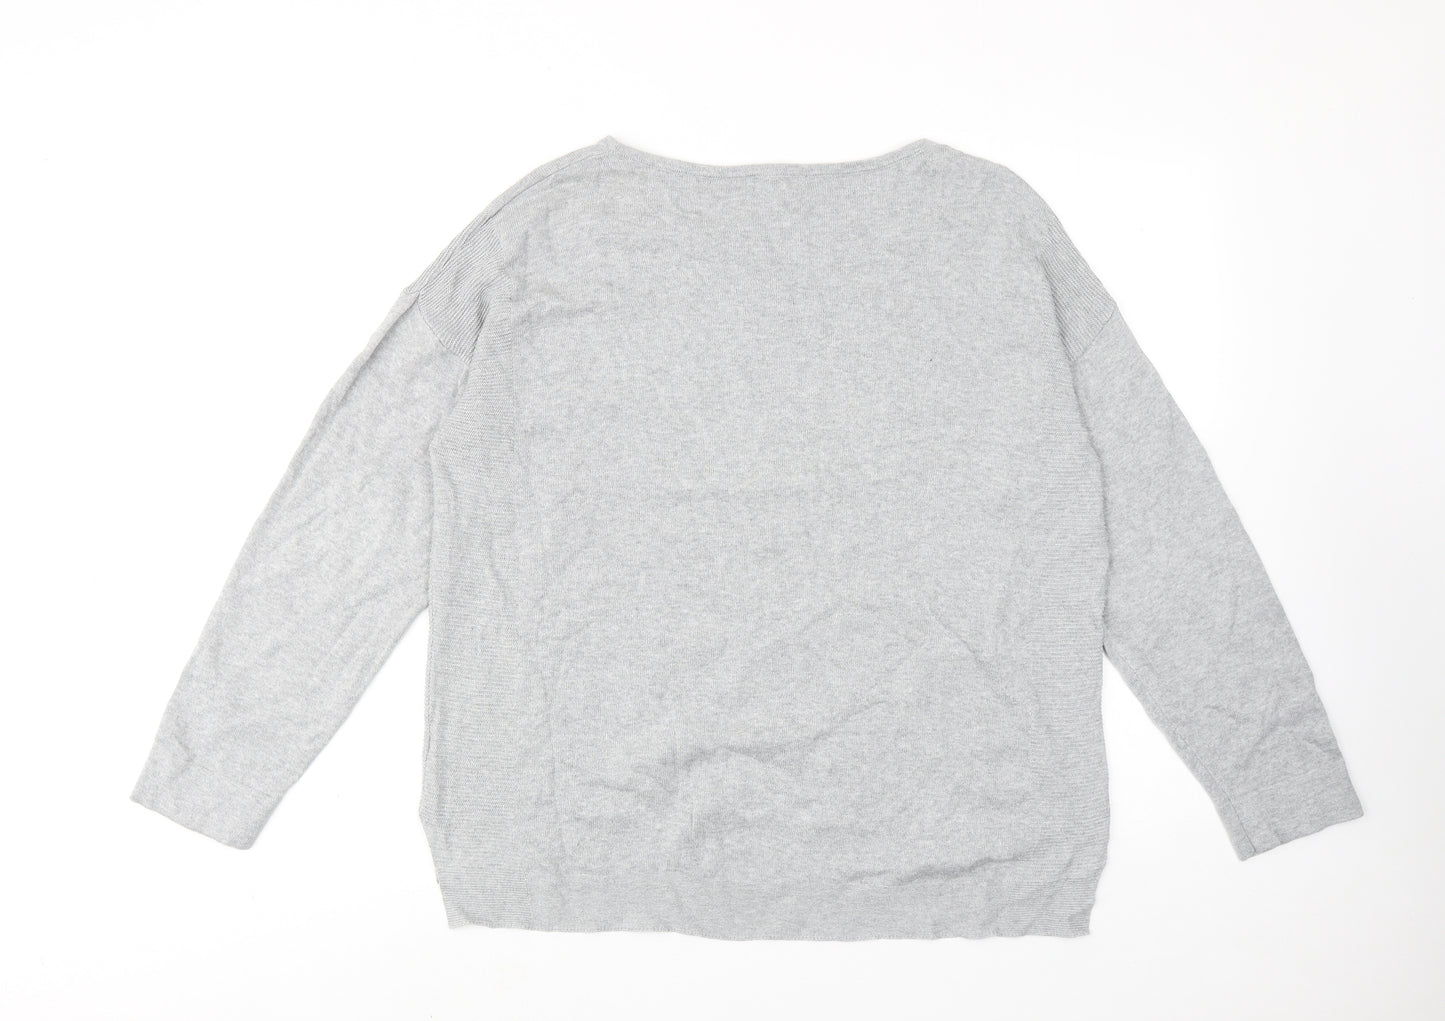 White Stuff Womens Grey Round Neck Cotton Pullover Jumper Size 16